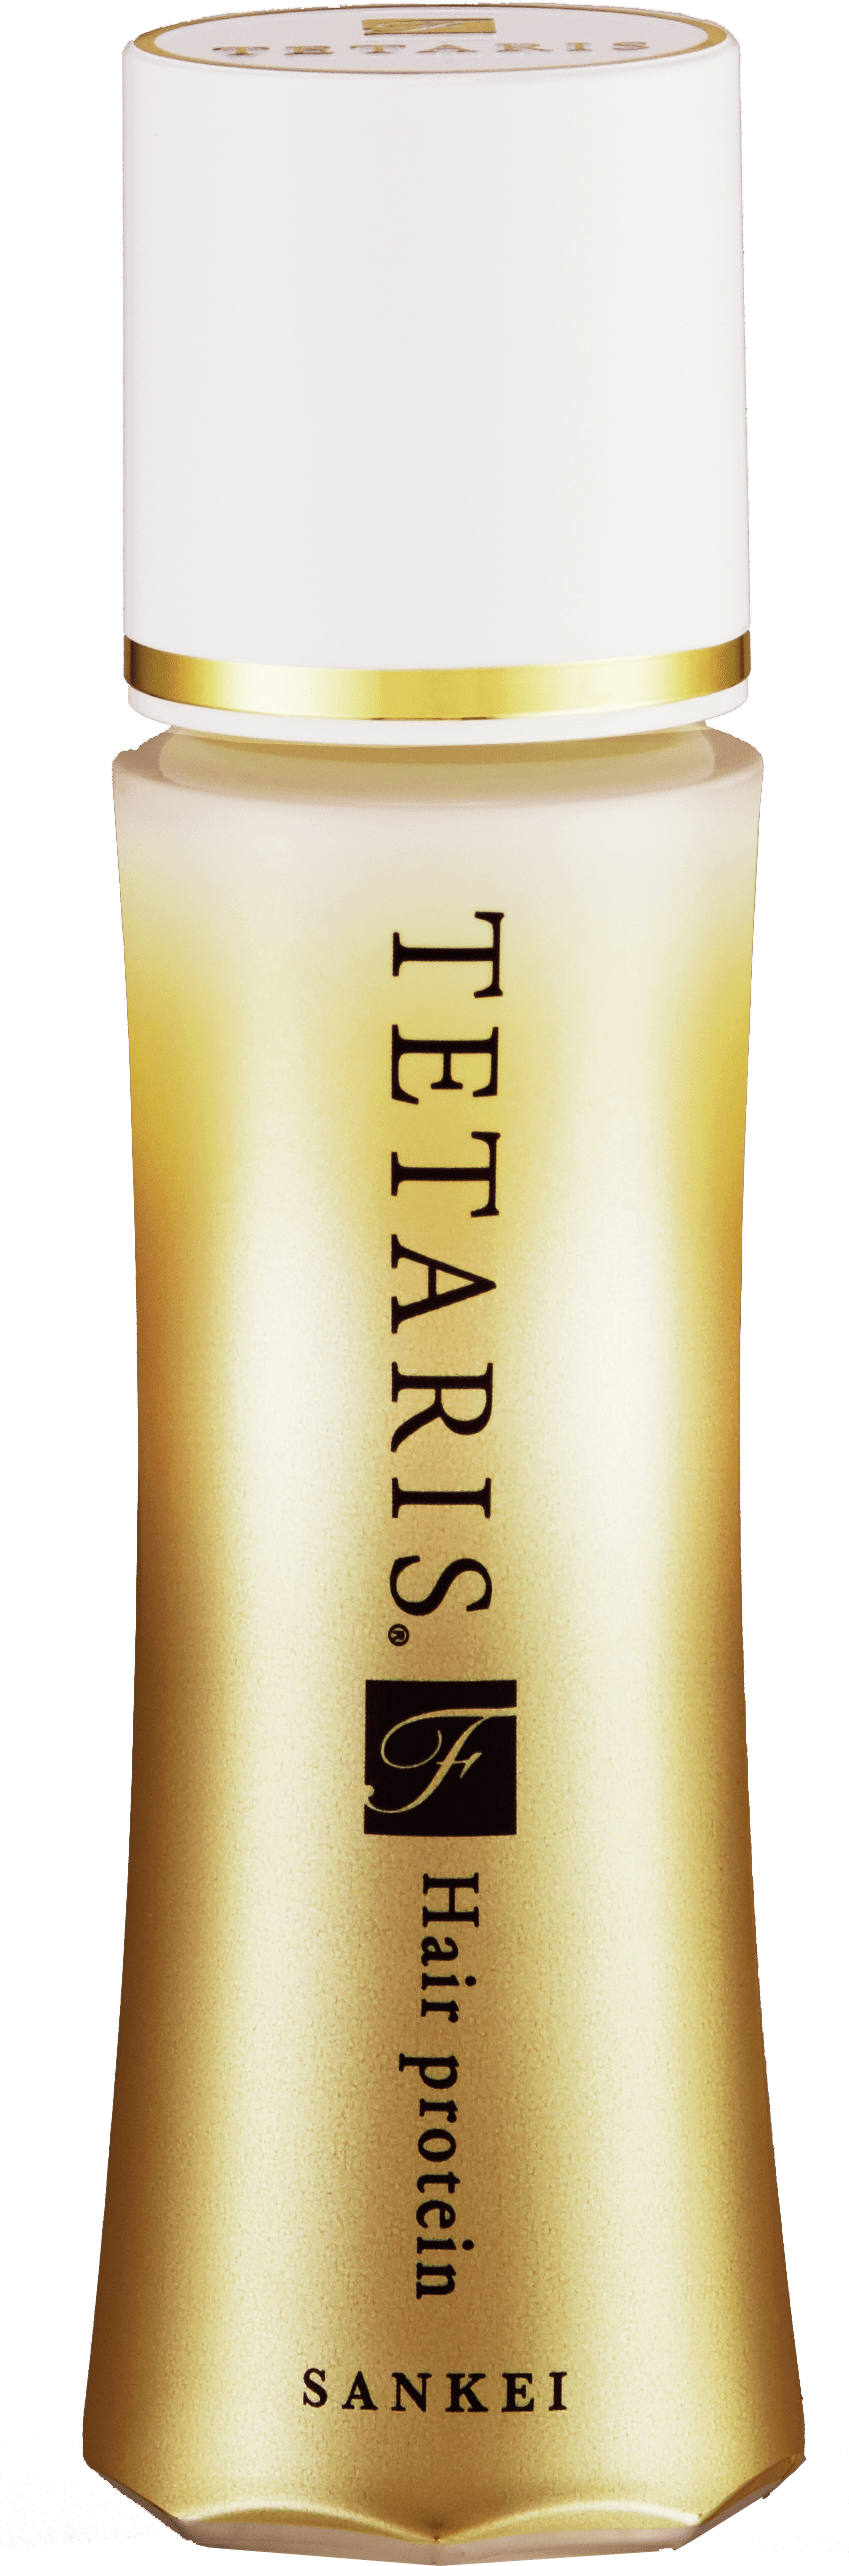 テタリスの三恵製薬株式会社